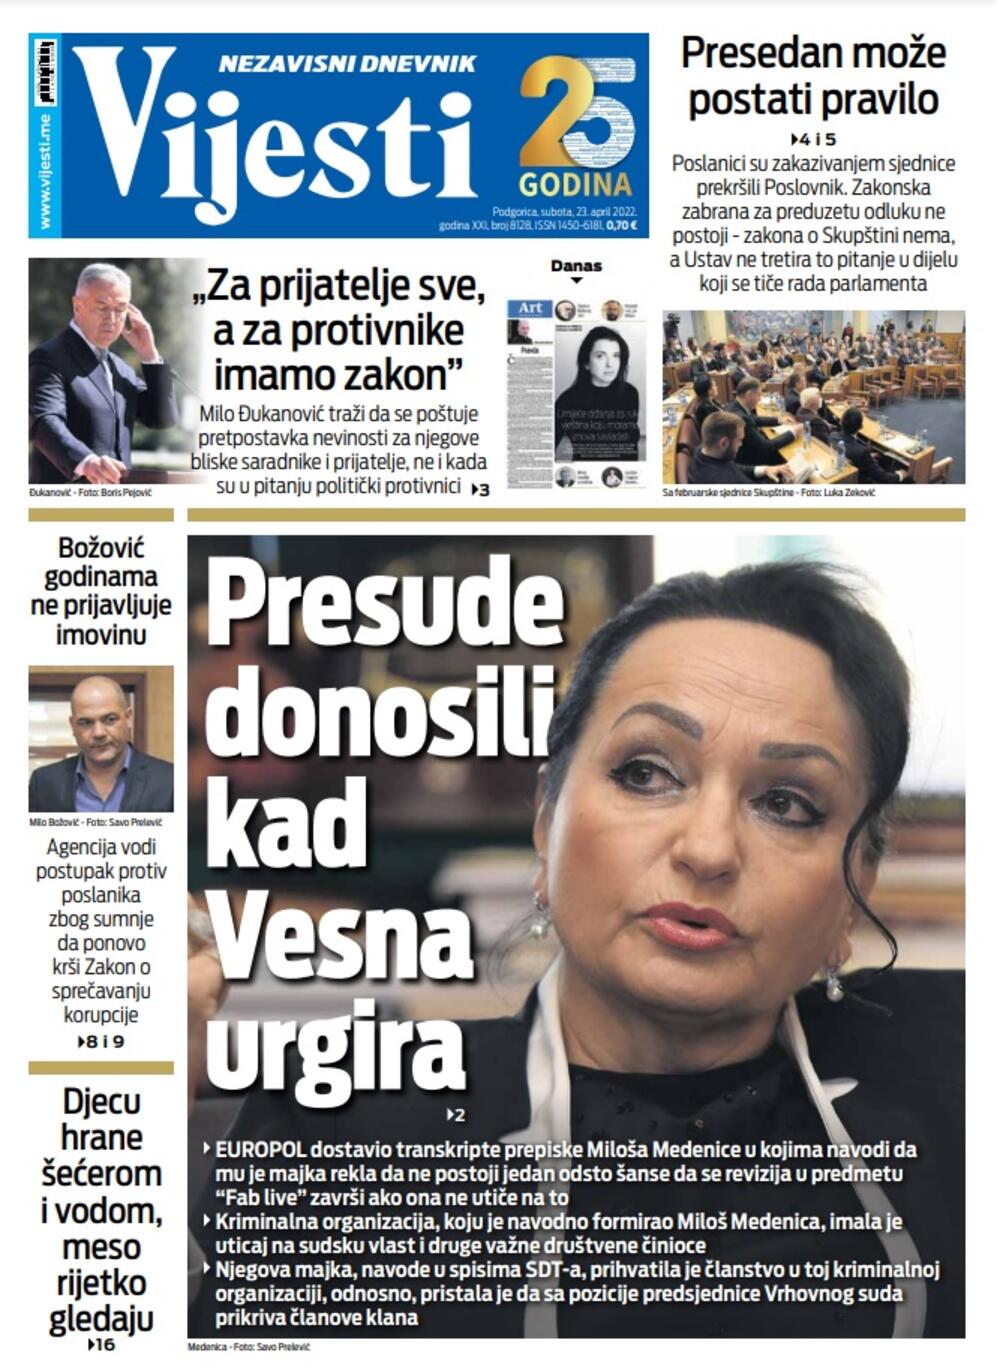 Naslovna strana "Vijesti" za 23. april 2022., Foto: Vijesti